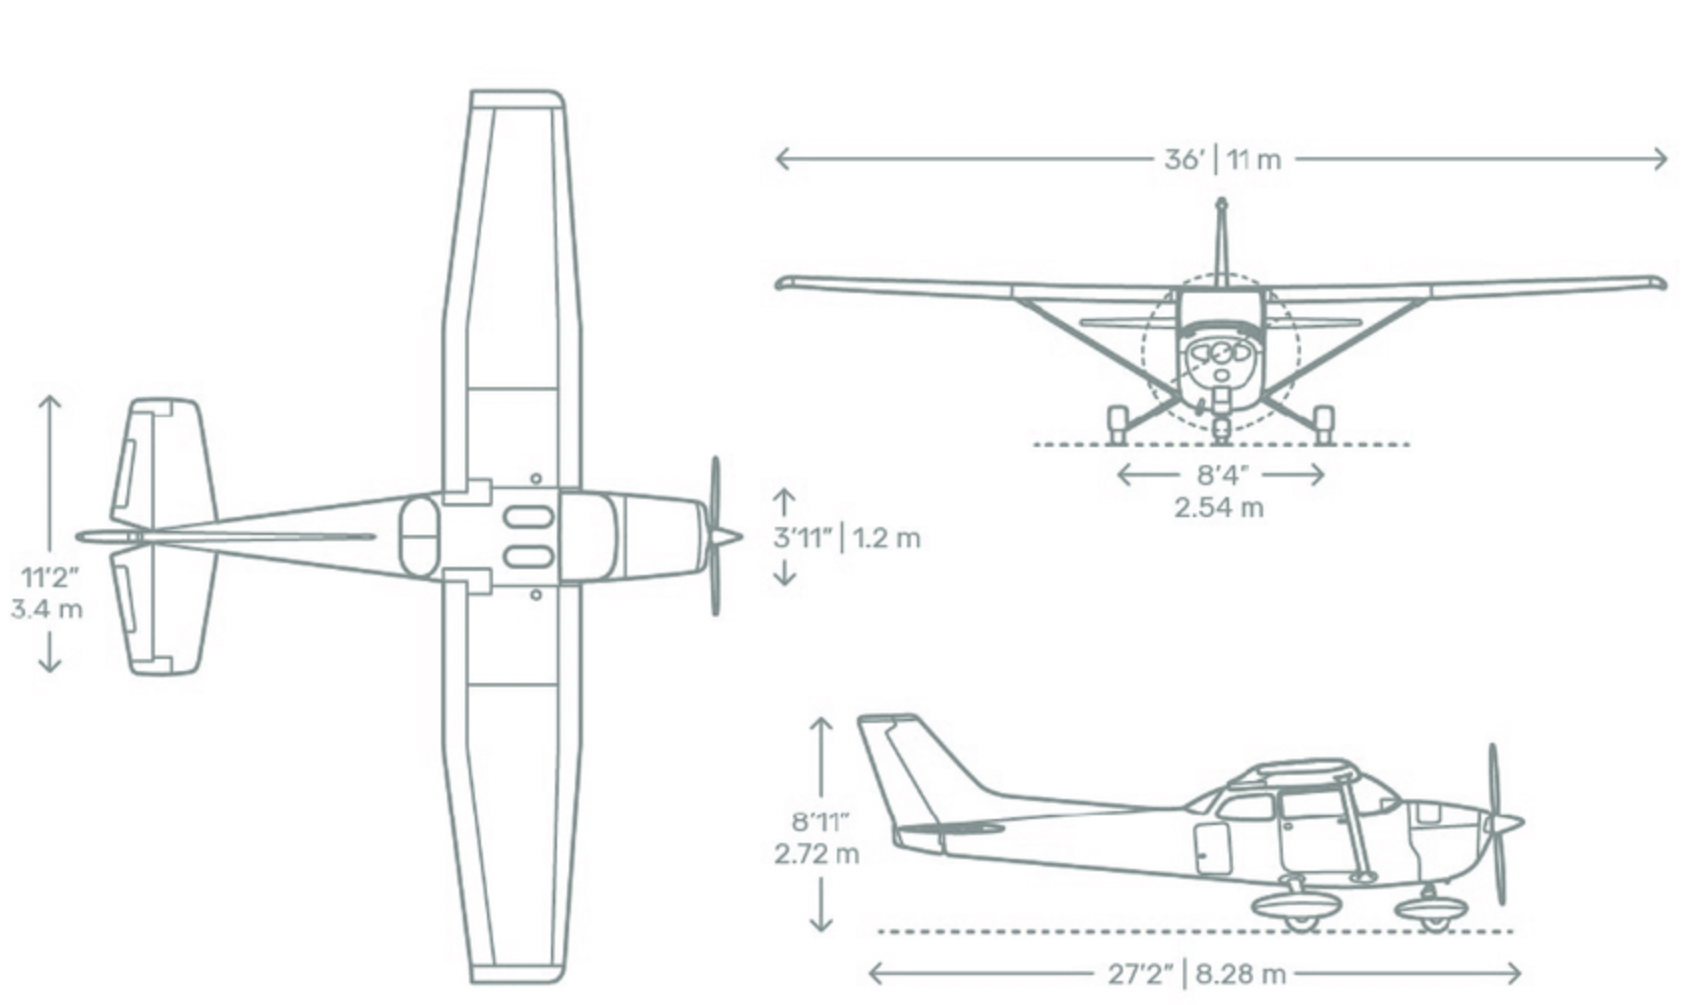 Cessna 172 Skyhawk dimensions